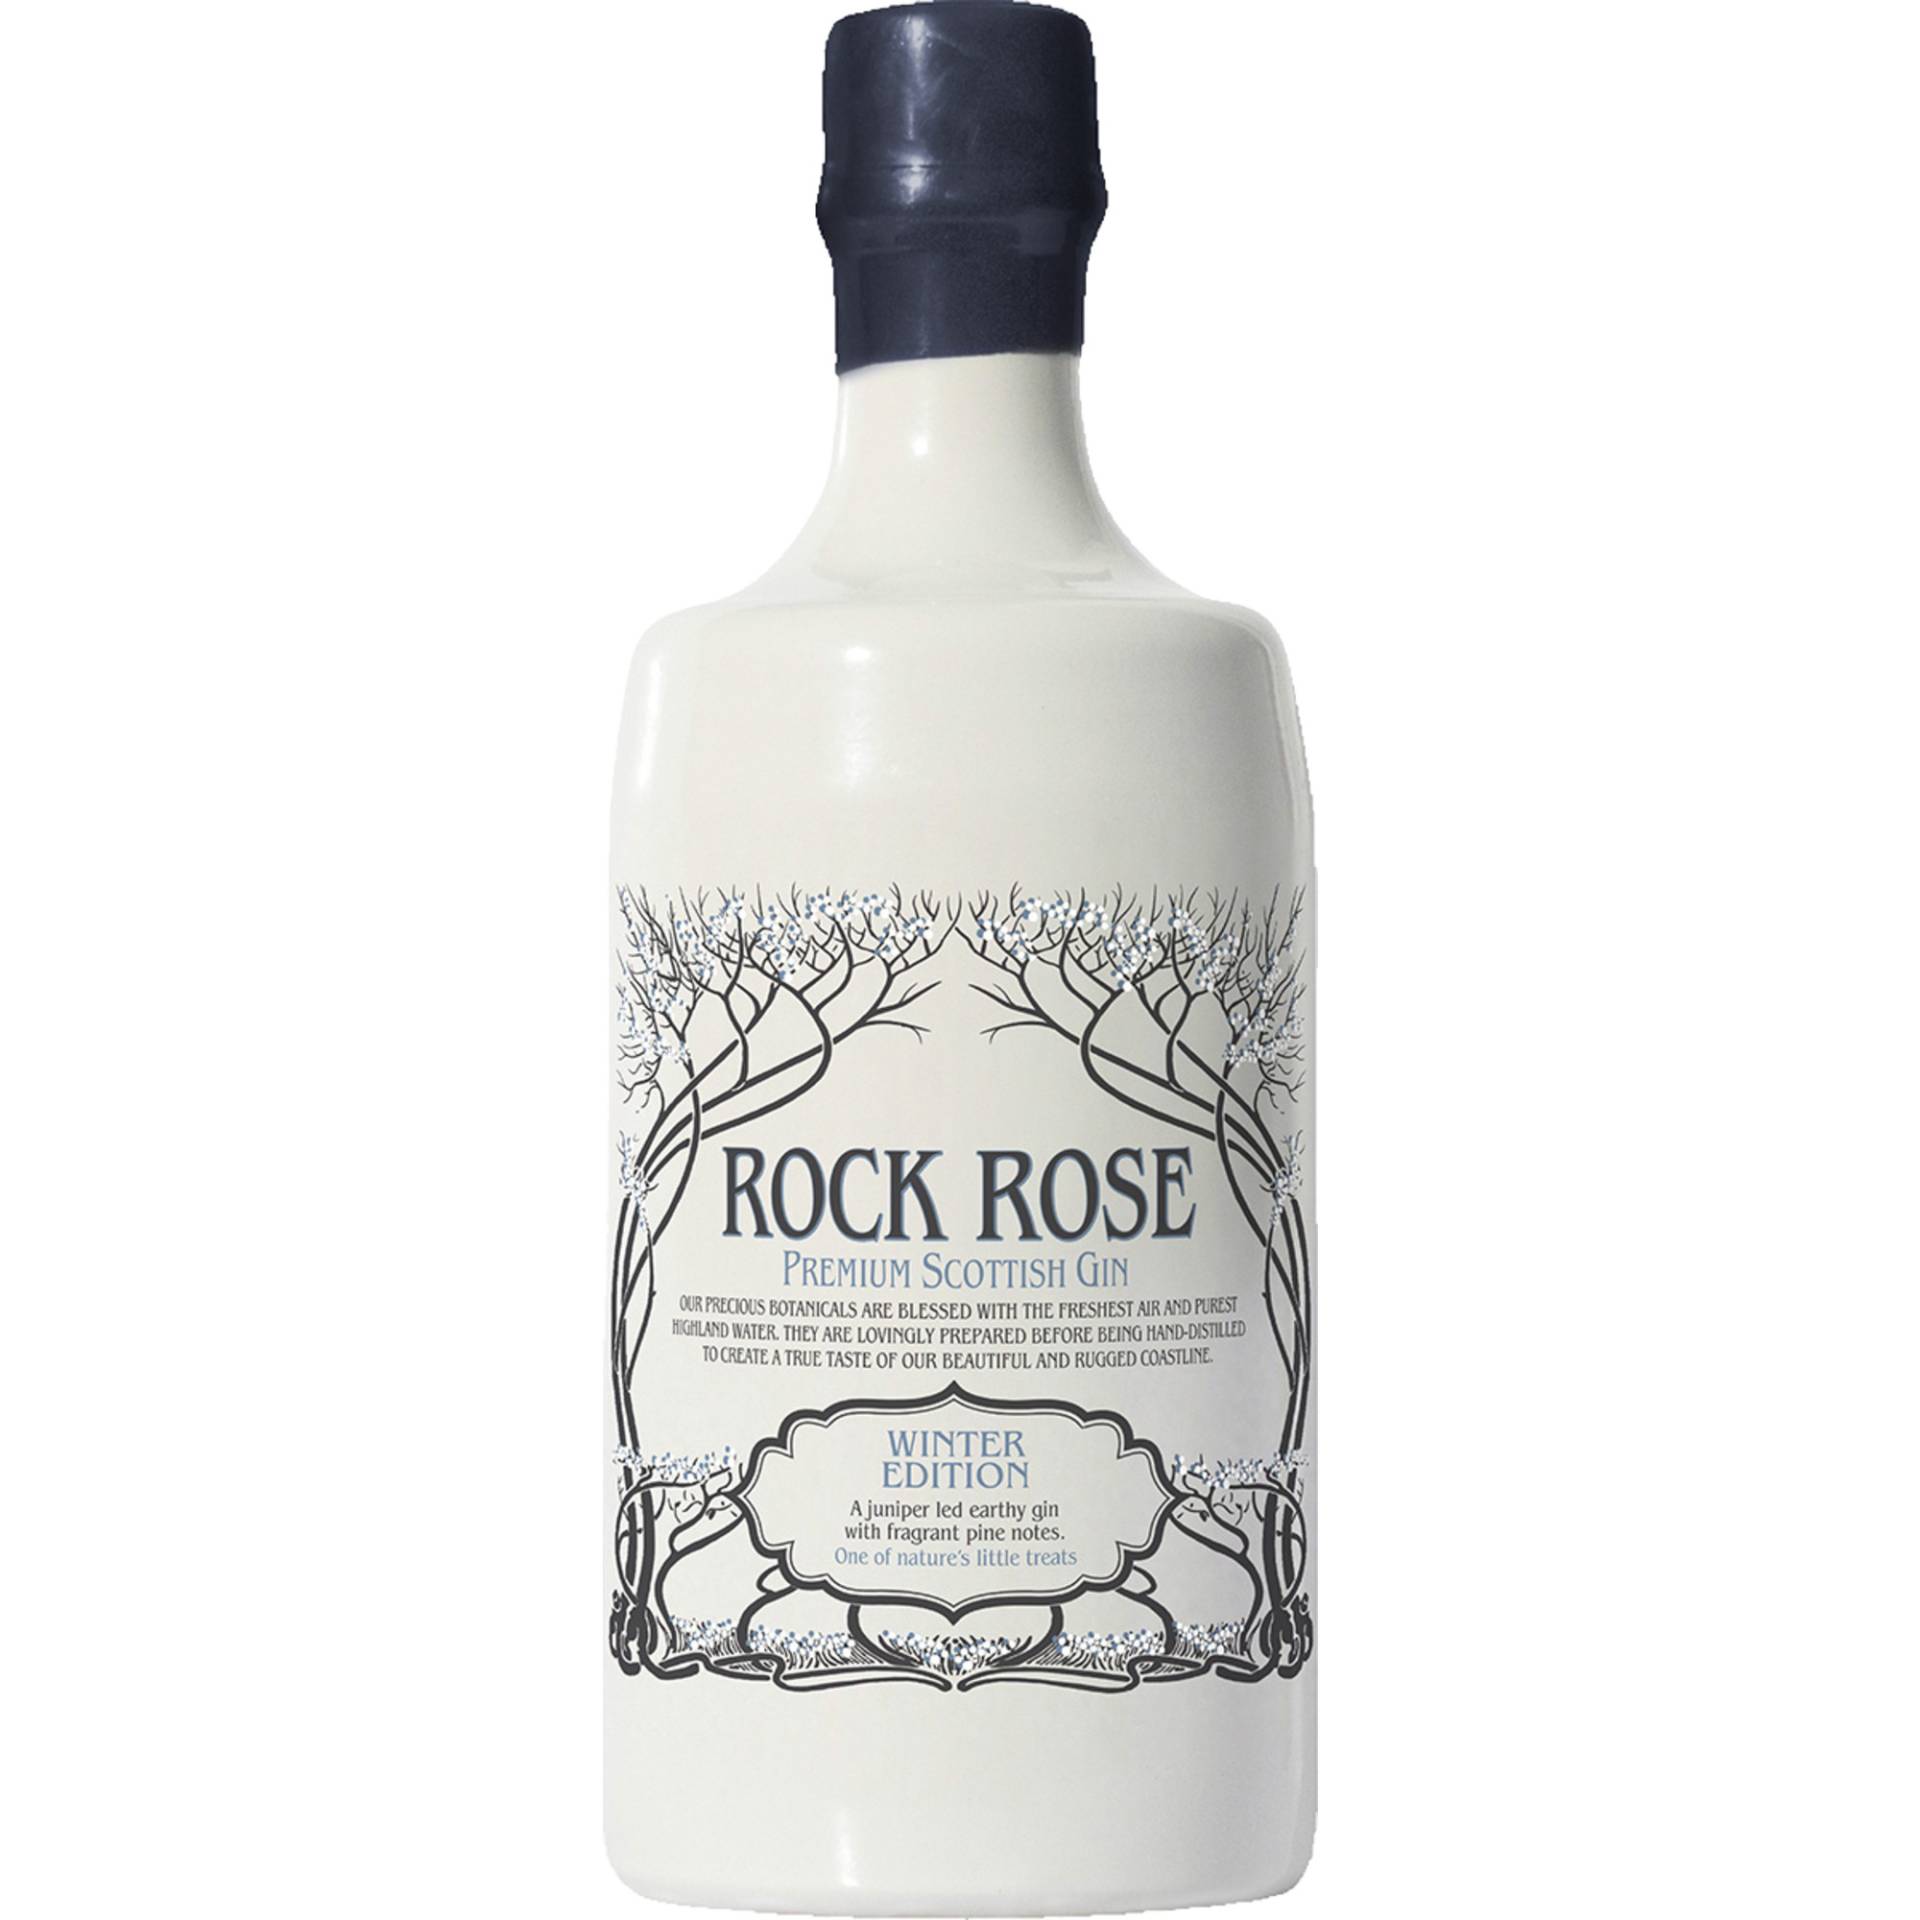 Rock Rose Premium Scottish Gin, Winter Edition, 41,5%, 0,7 L, Schottland, Spirituosen von Dunnet Bay Distillers Ltd. ,   GB KW14 8YD Thurso